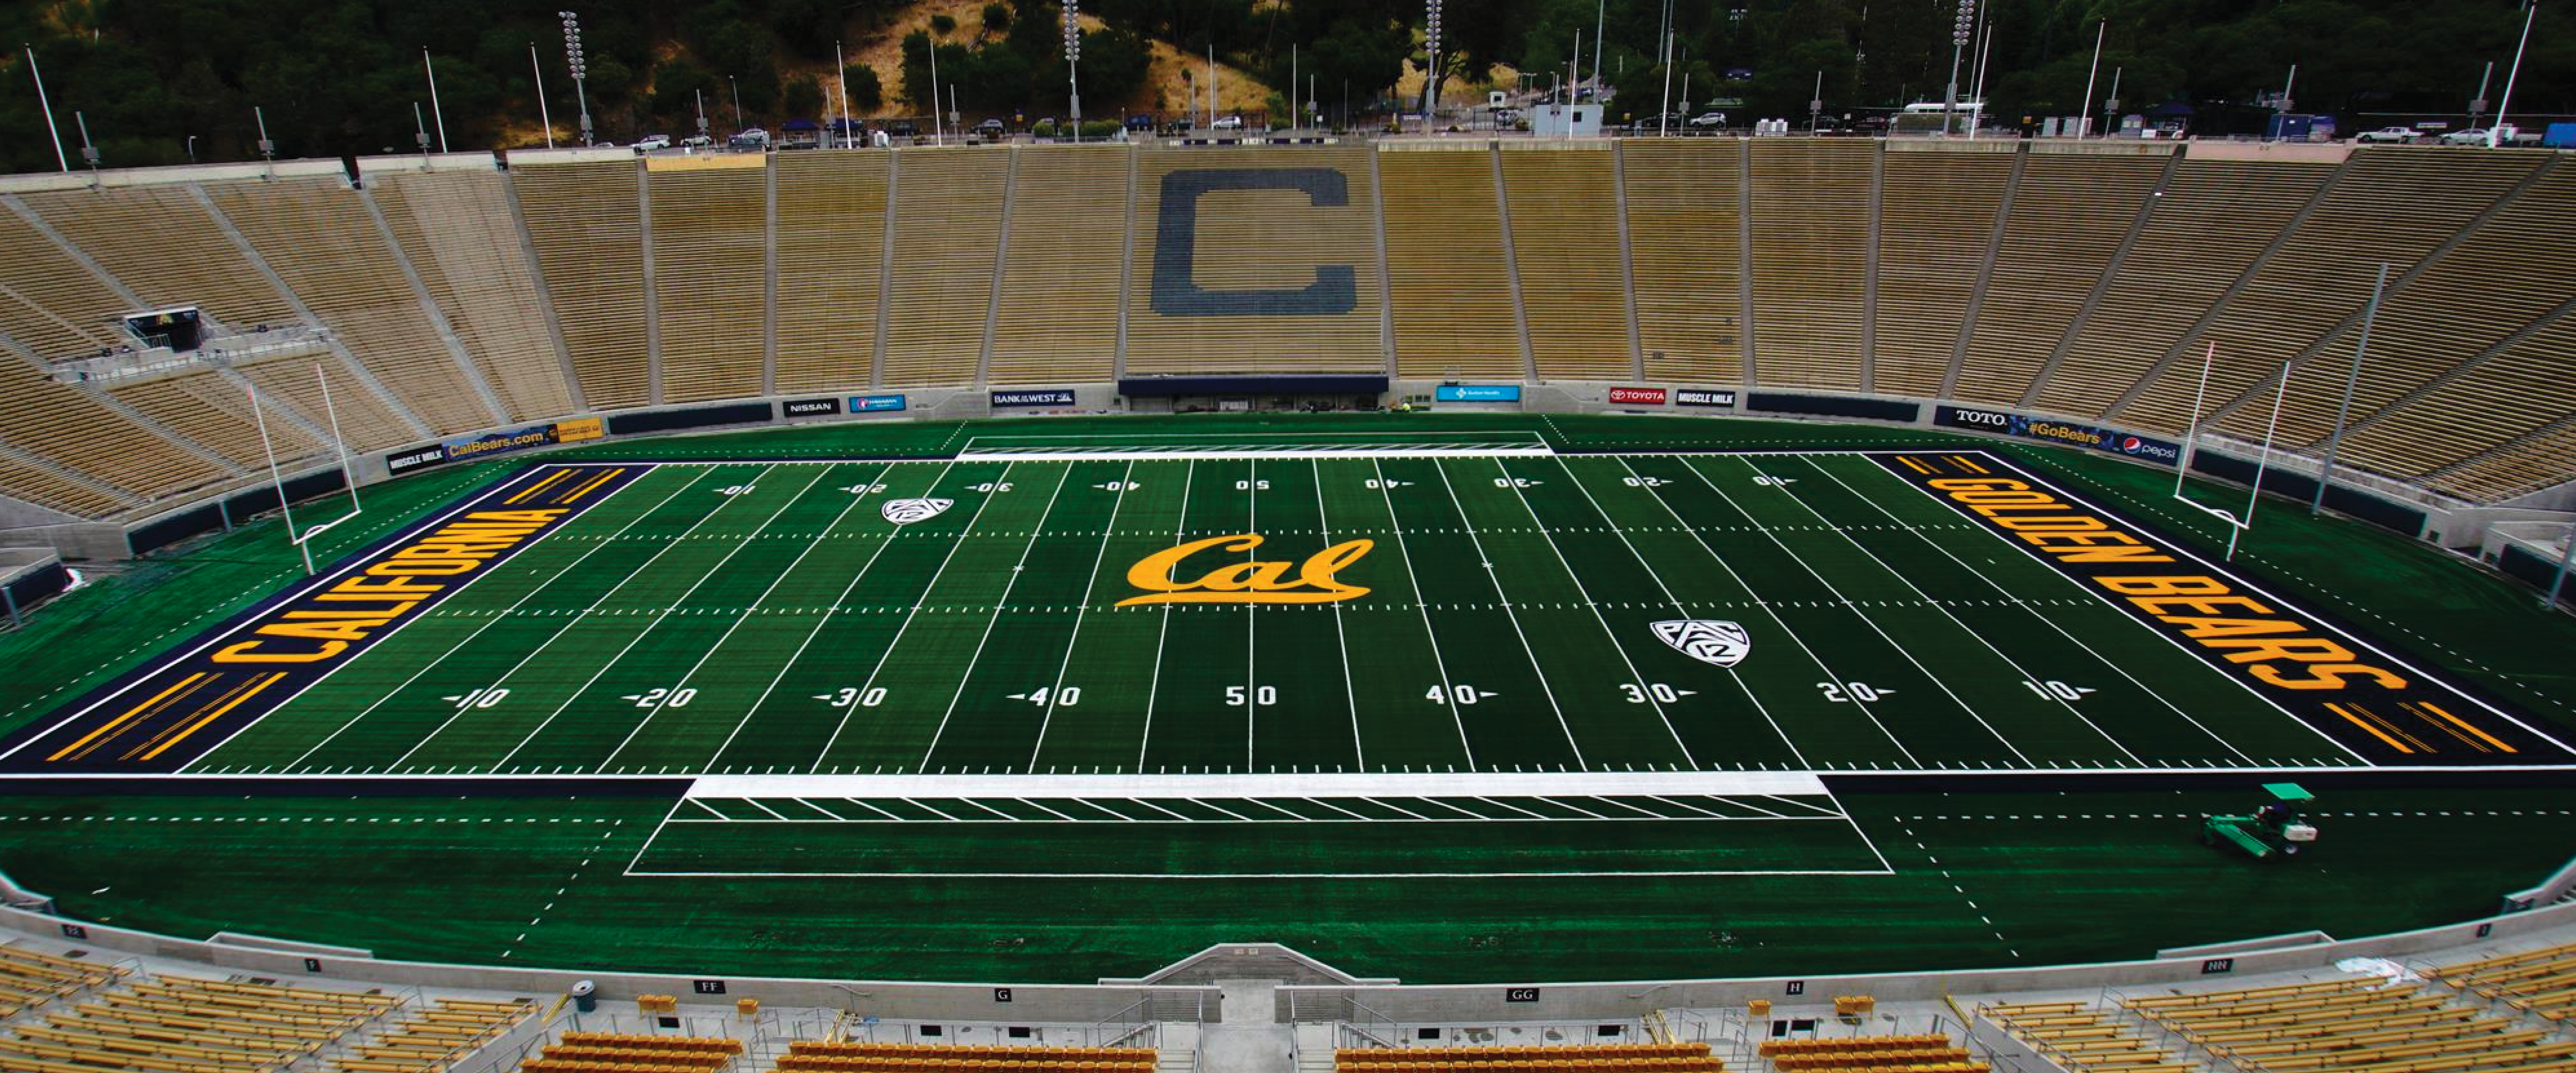 Cal Memorial Stadium – Berkeley